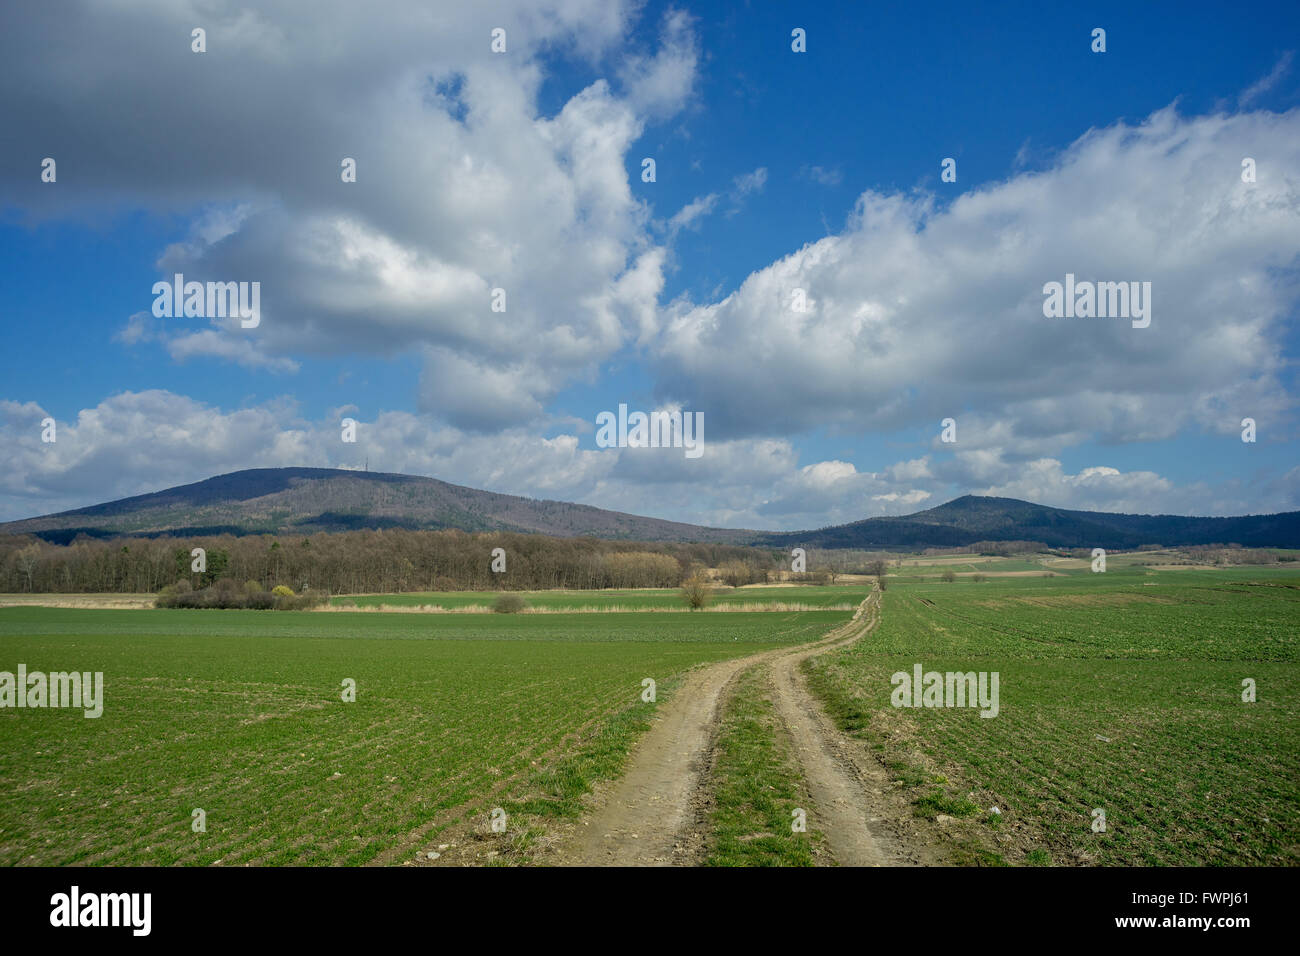 Montare Sleza e Radunia montaggio con molla soleggiata sky,campi verdi e sterrata Bassa Slesia Nieder Schlesien Foto Stock